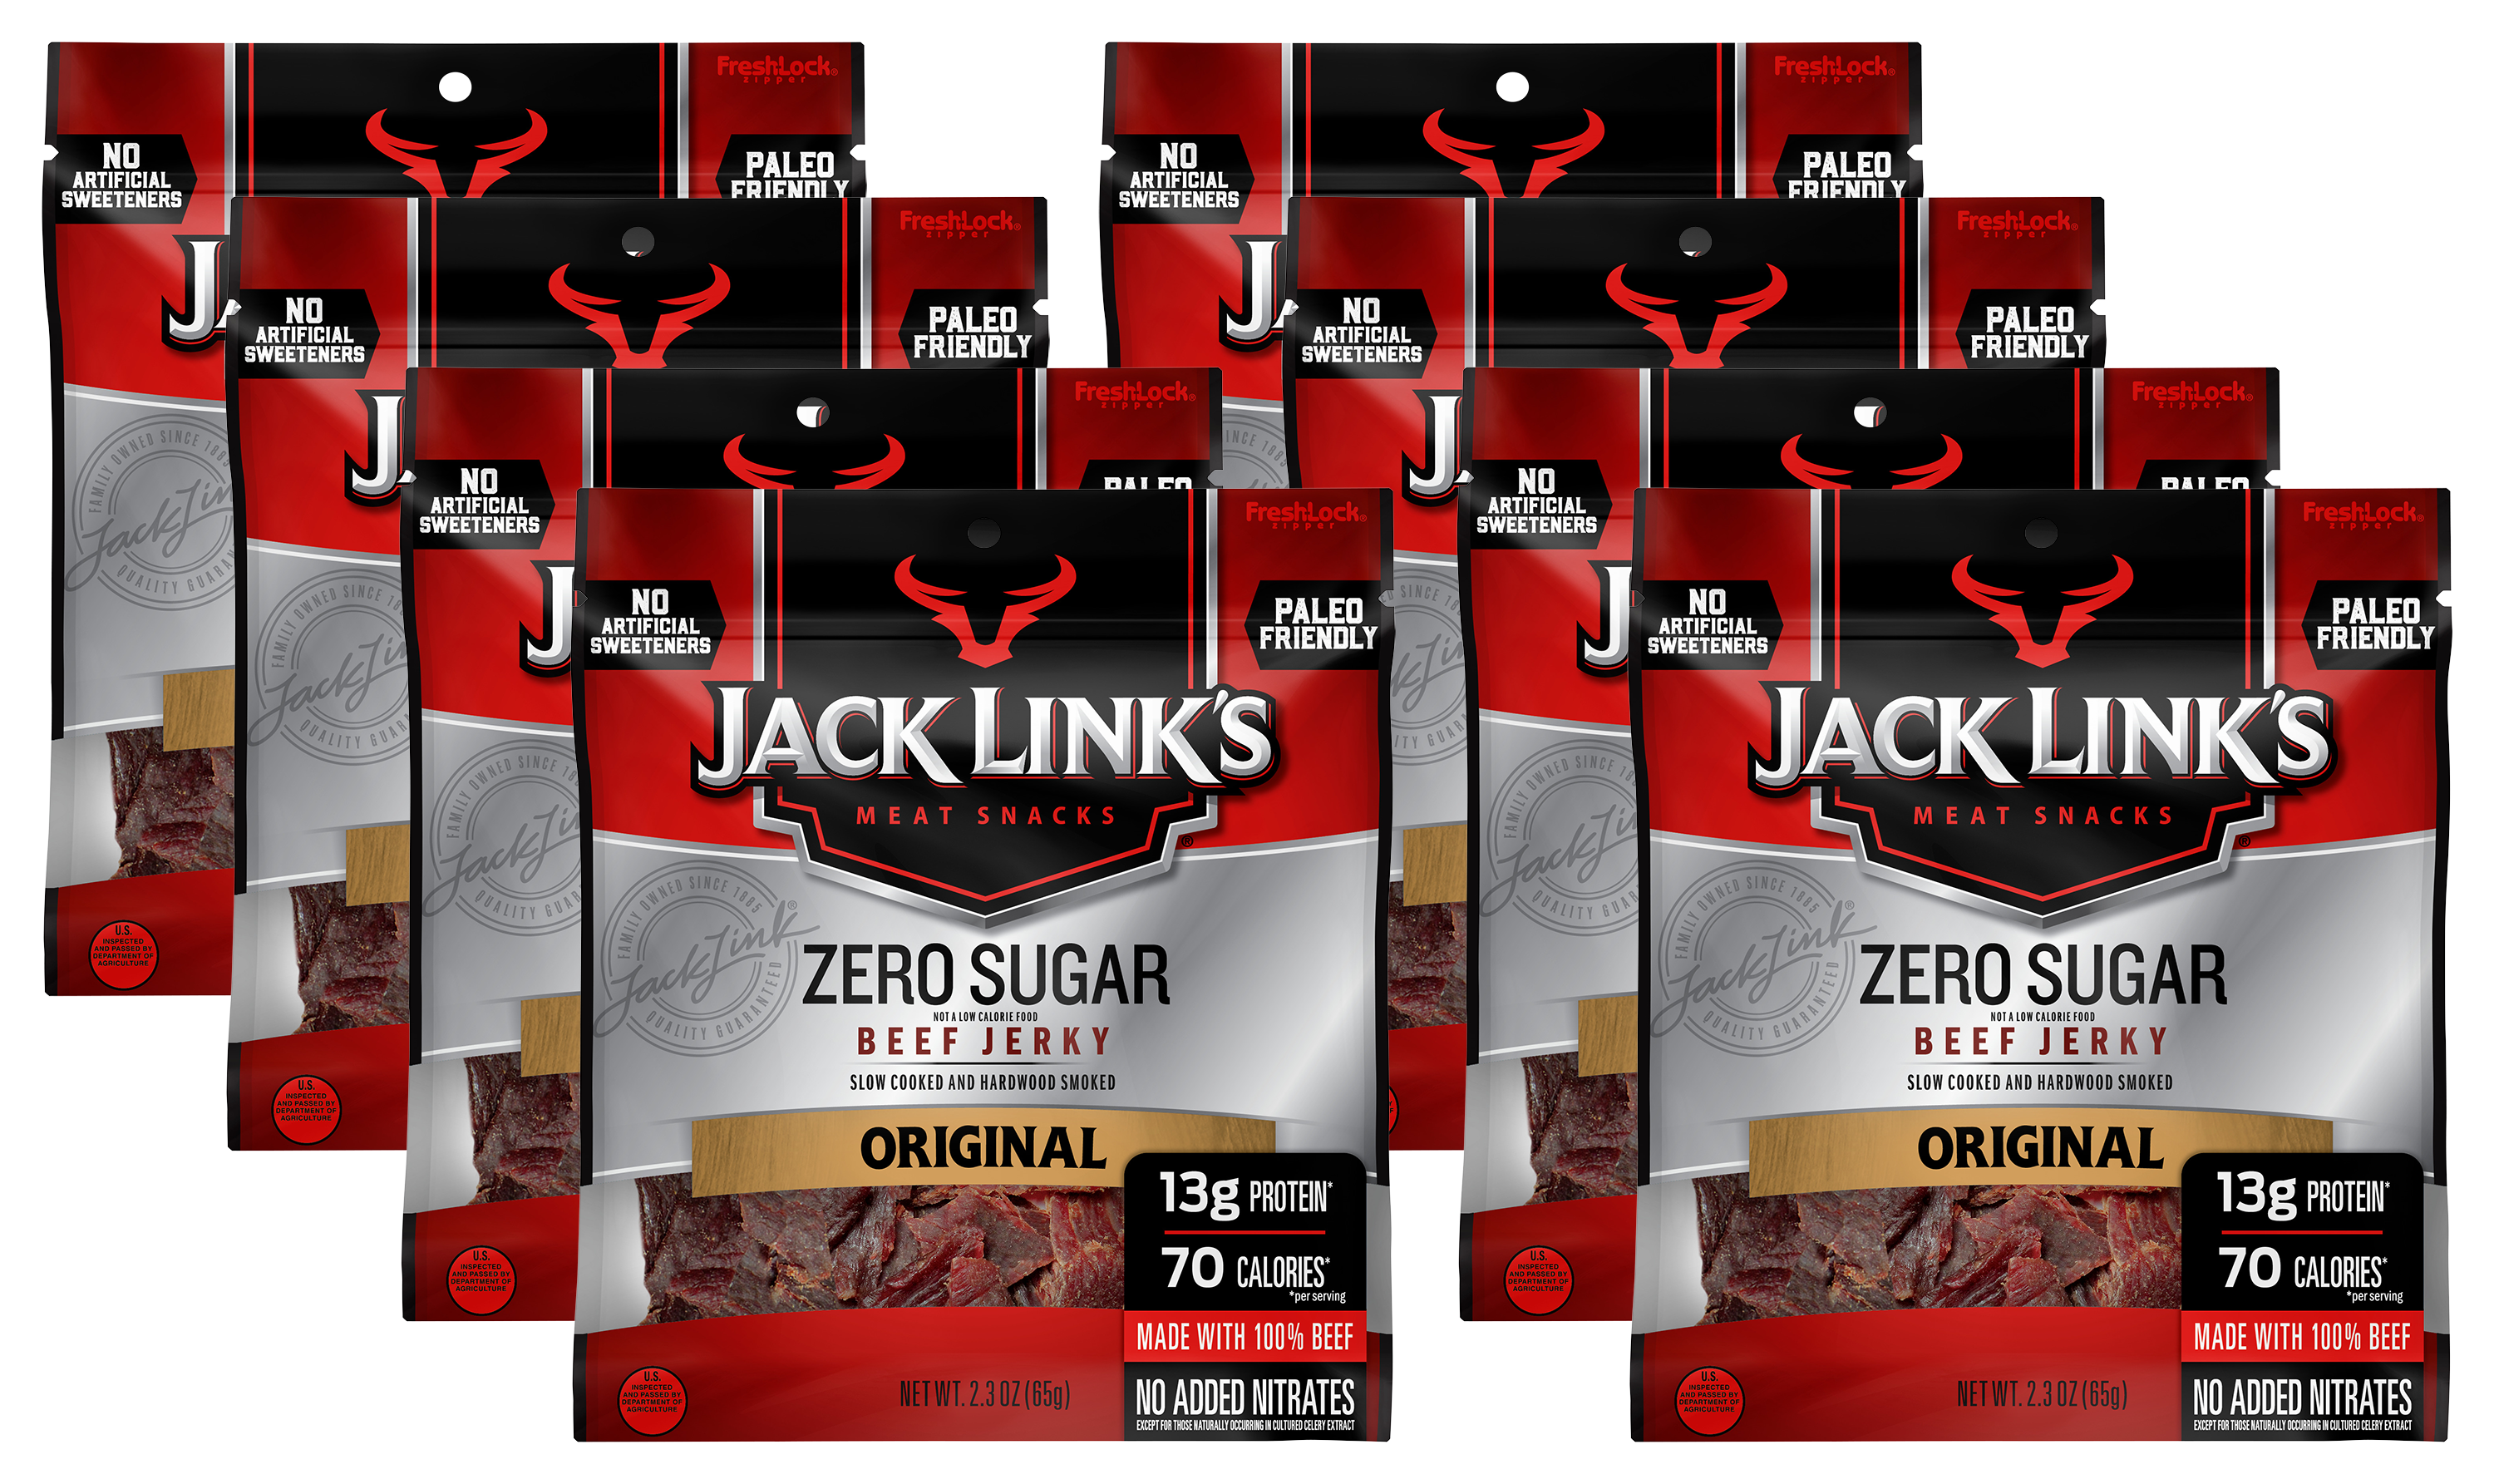 Jack Link's Zero Sugar Original Beef Jerky